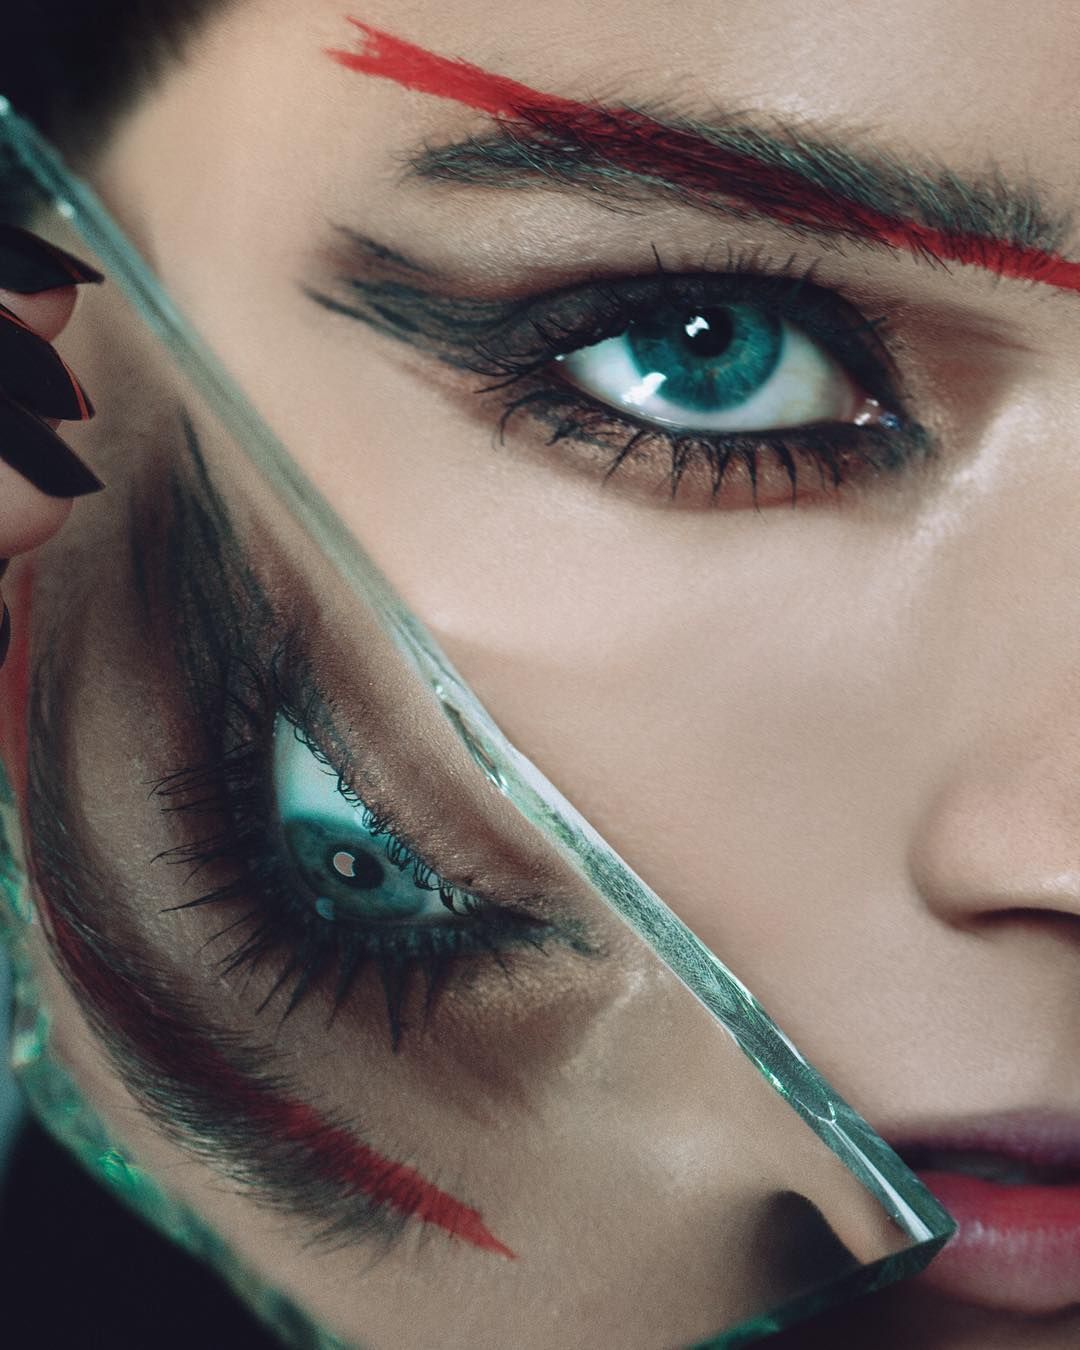 Face Makeup & Face Cosmetics | Sephora - Face Makeup & Face Cosmetics | Sephora -   16 dark beauty Editorial ideas